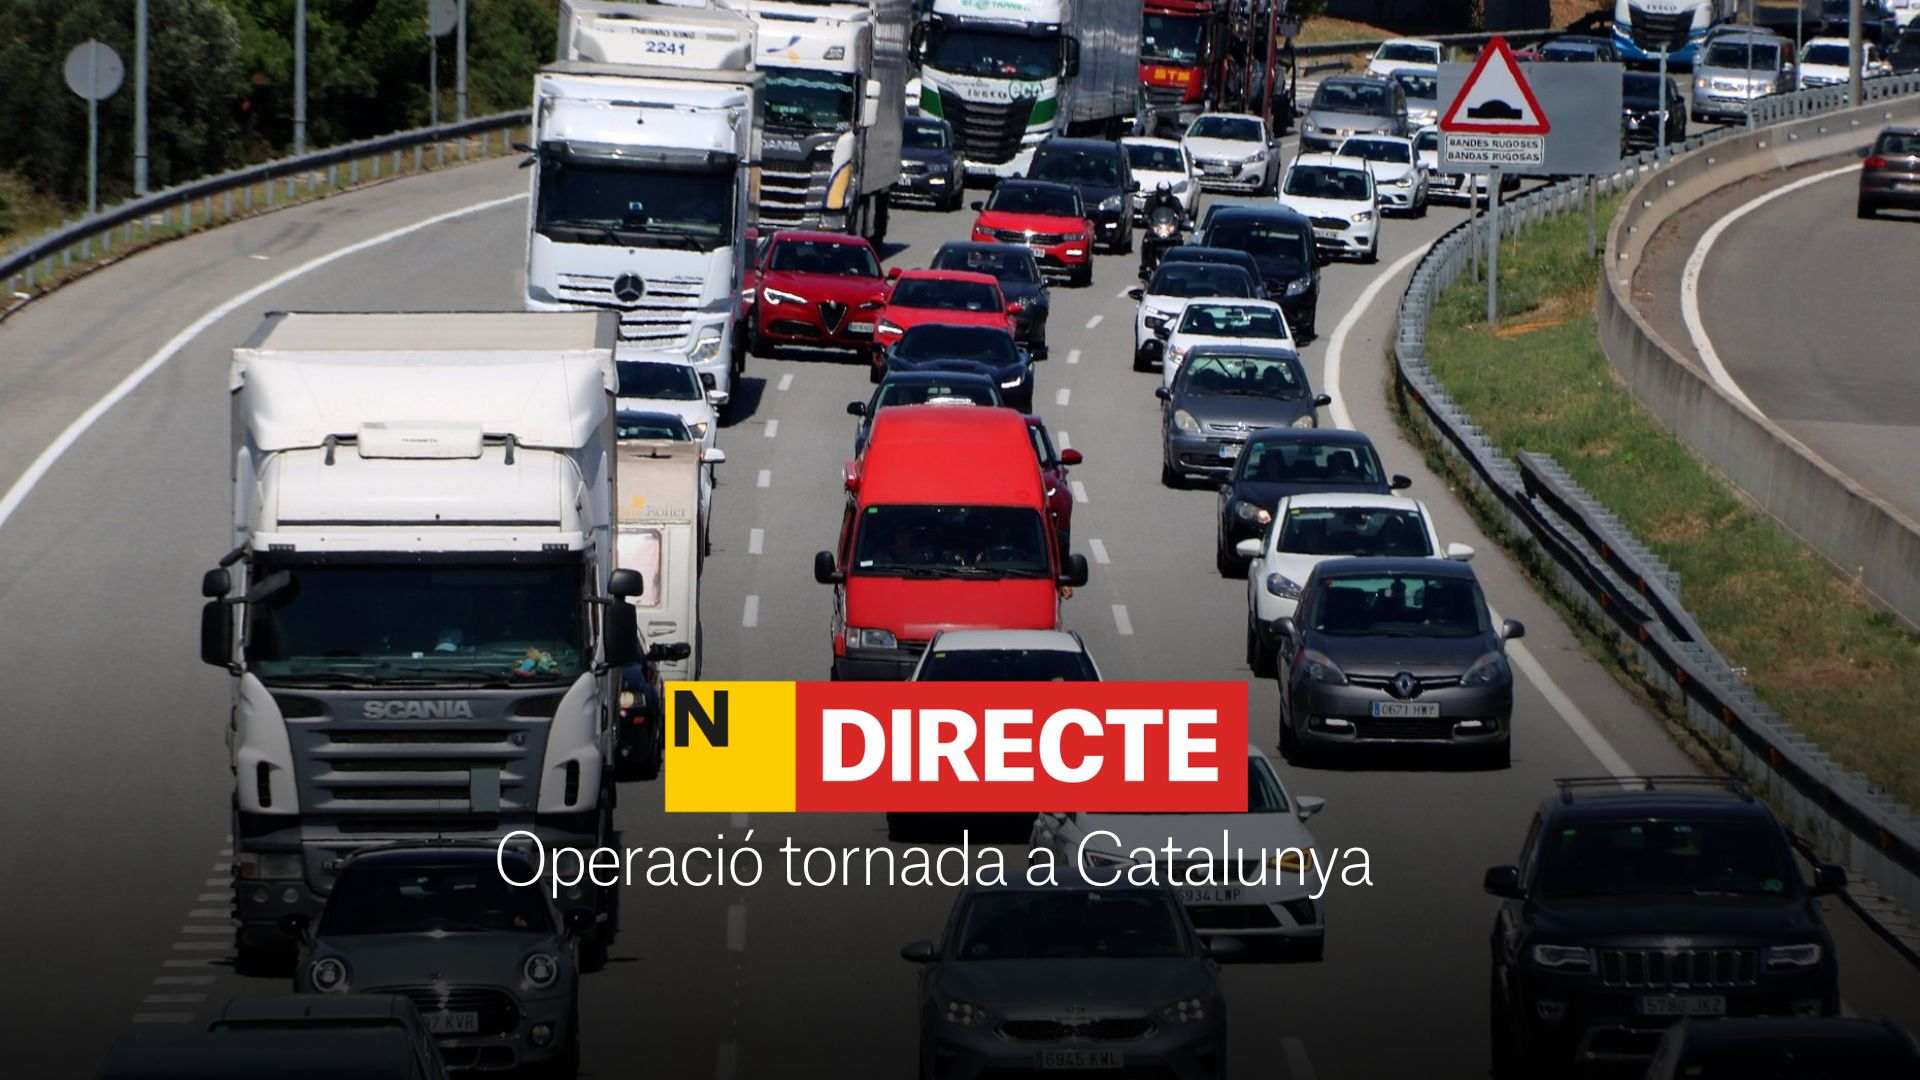 Operació tornada a Catalunya, DIRECTE | Última hora de l'estat de les carreteres